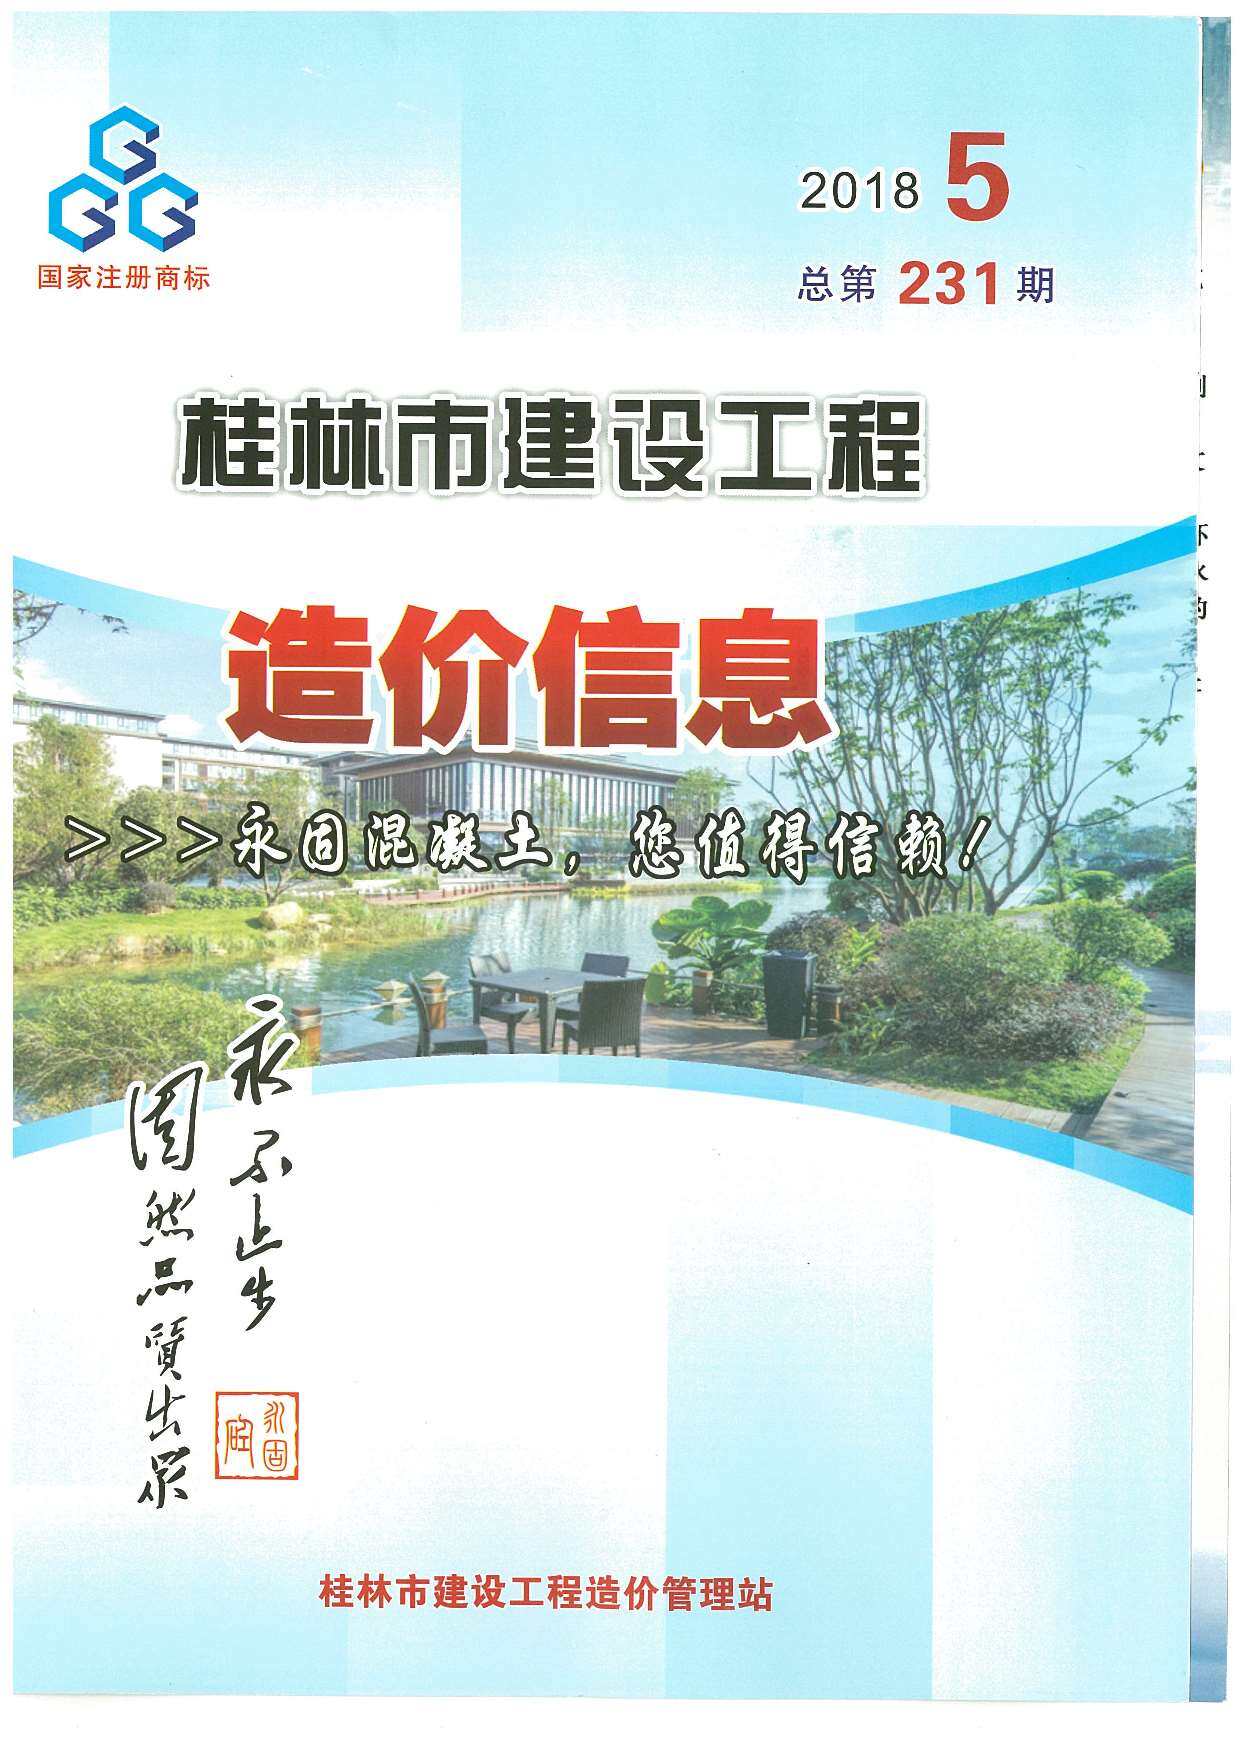 桂林市2018年5月工程造价信息期刊